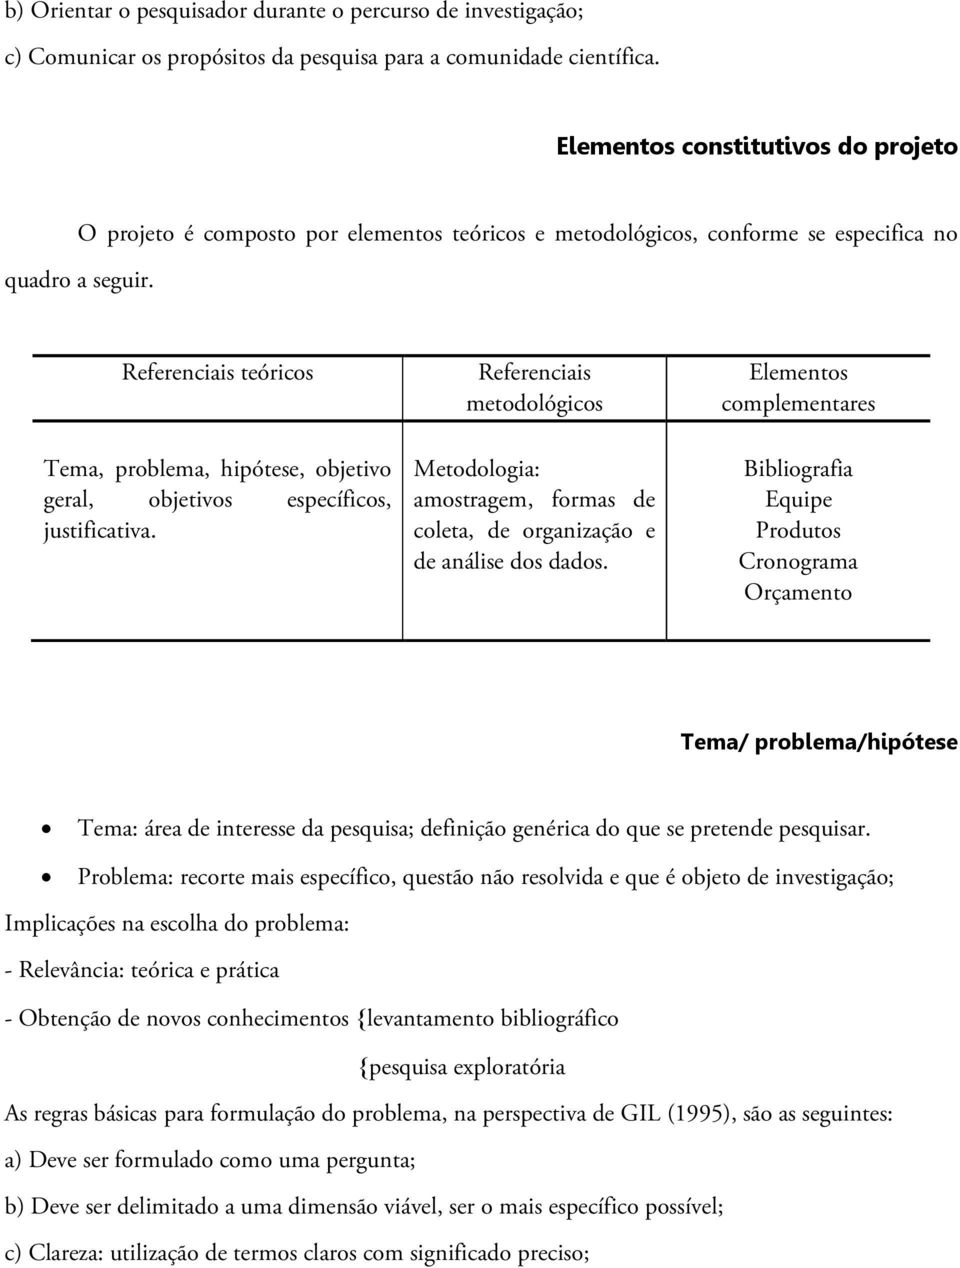 Referenciais teóricos Tema, problema, hipótese, objetivo geral, objetivos específicos, justificativa.